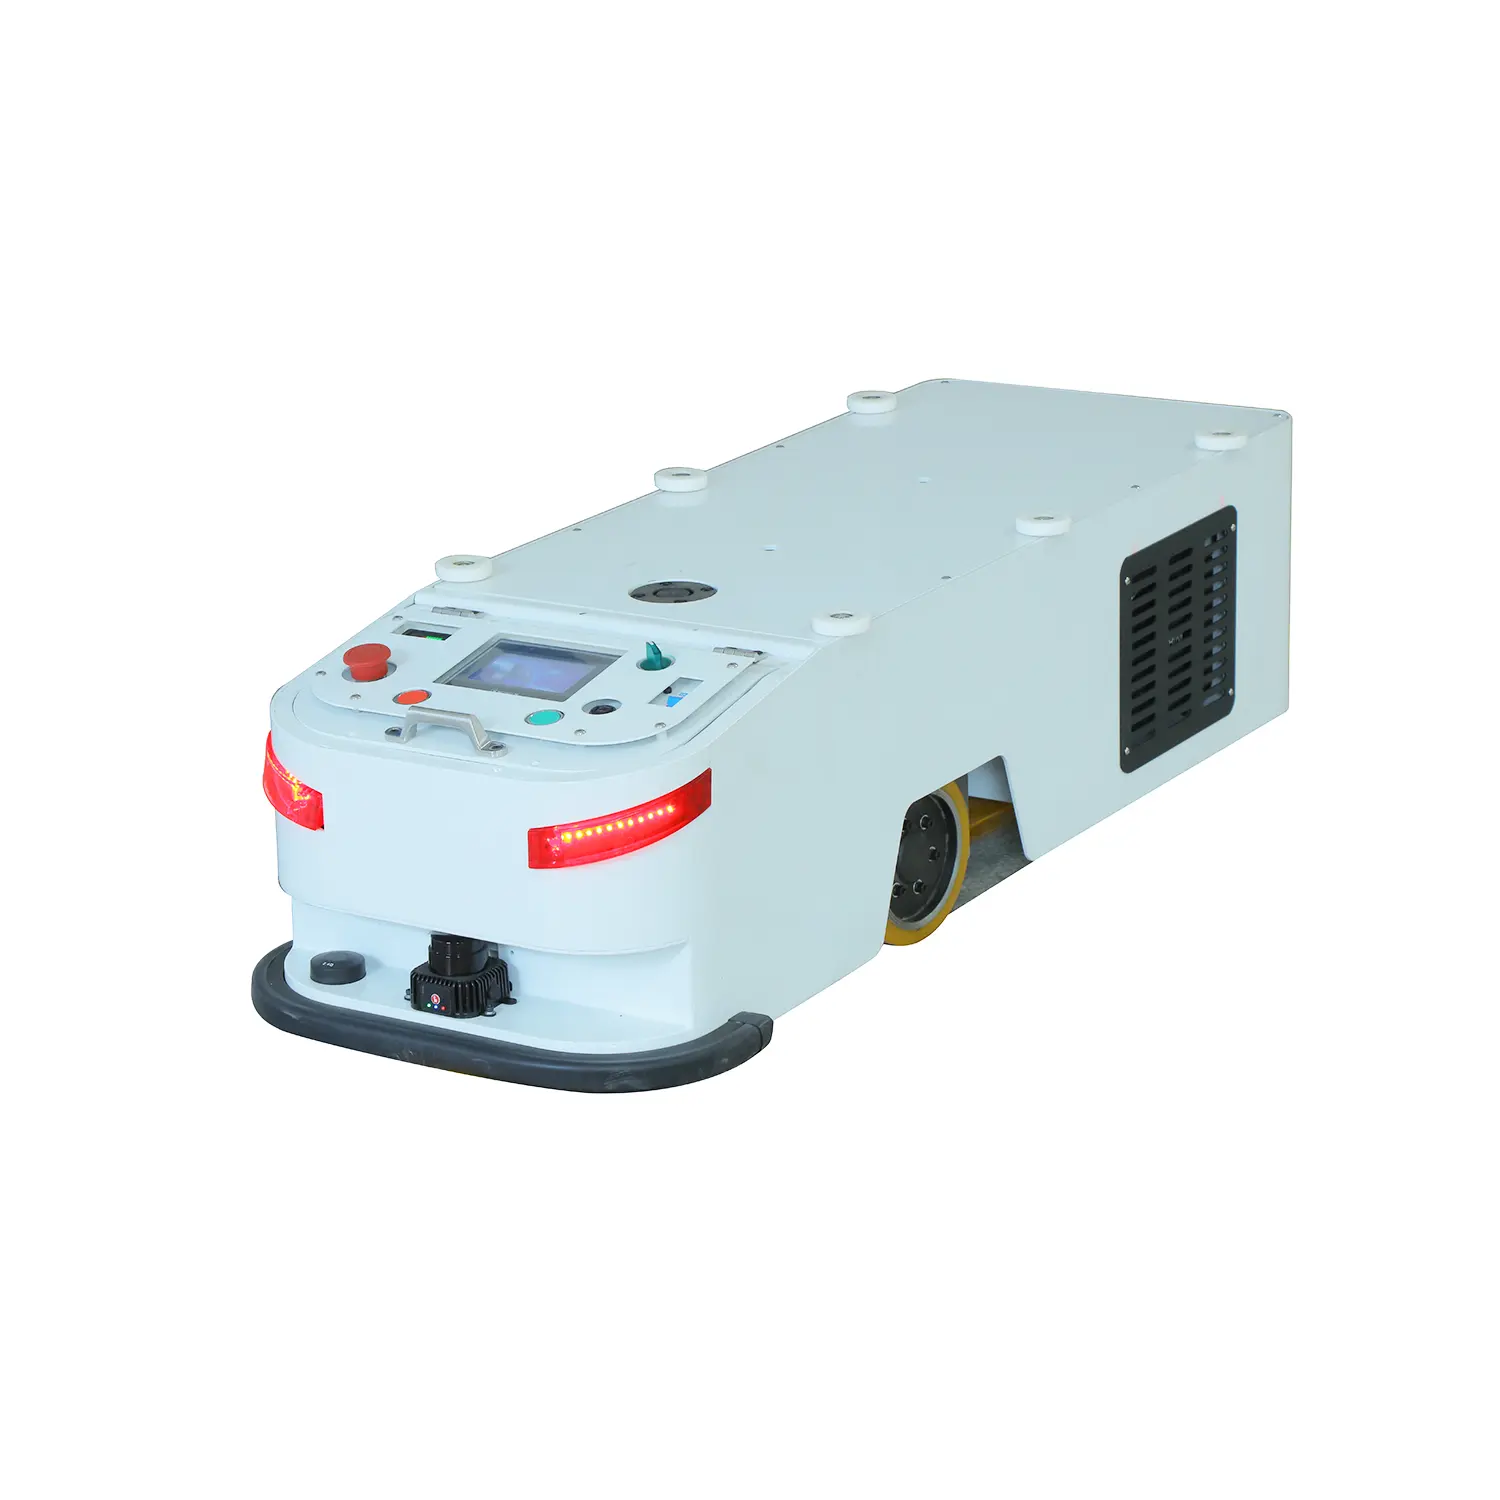 TZBOT-robot de navegación magnética para coche industrial AGV, dispositivo con capacidad de carga de 700kg, evita obstáculos